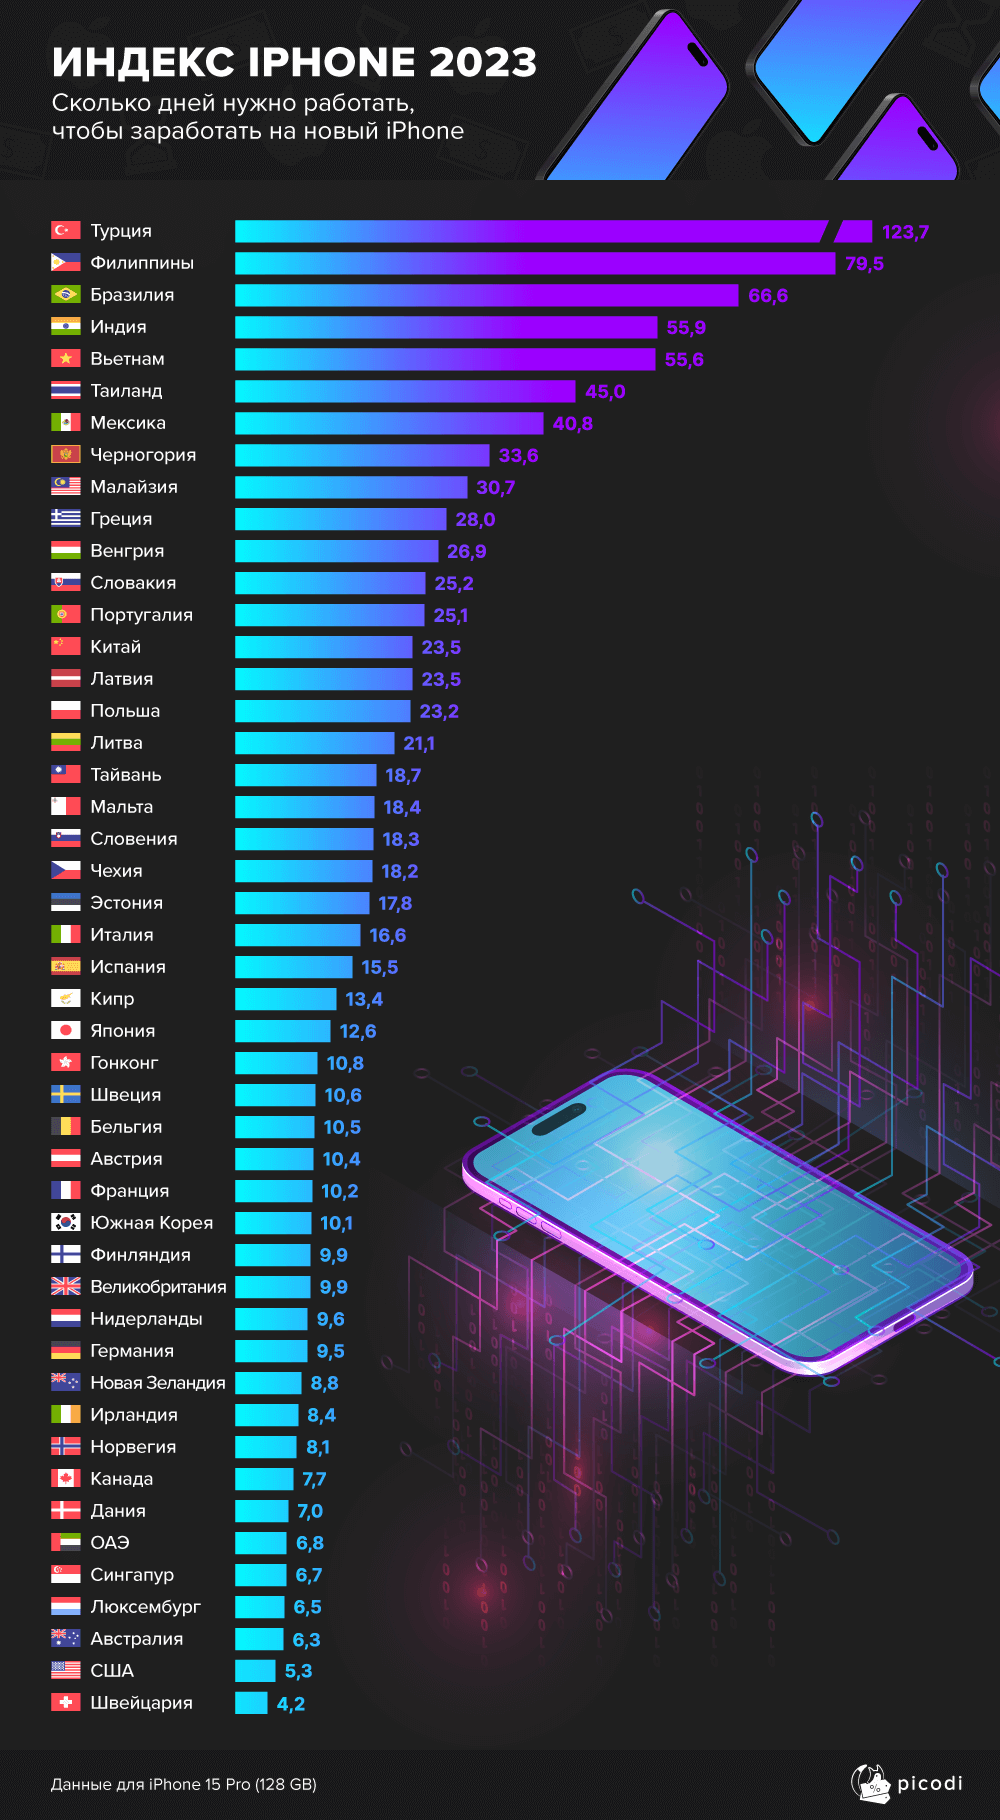 Сколько нужно работать в разных странах, чтобы накопить на iPhone 15 Pro